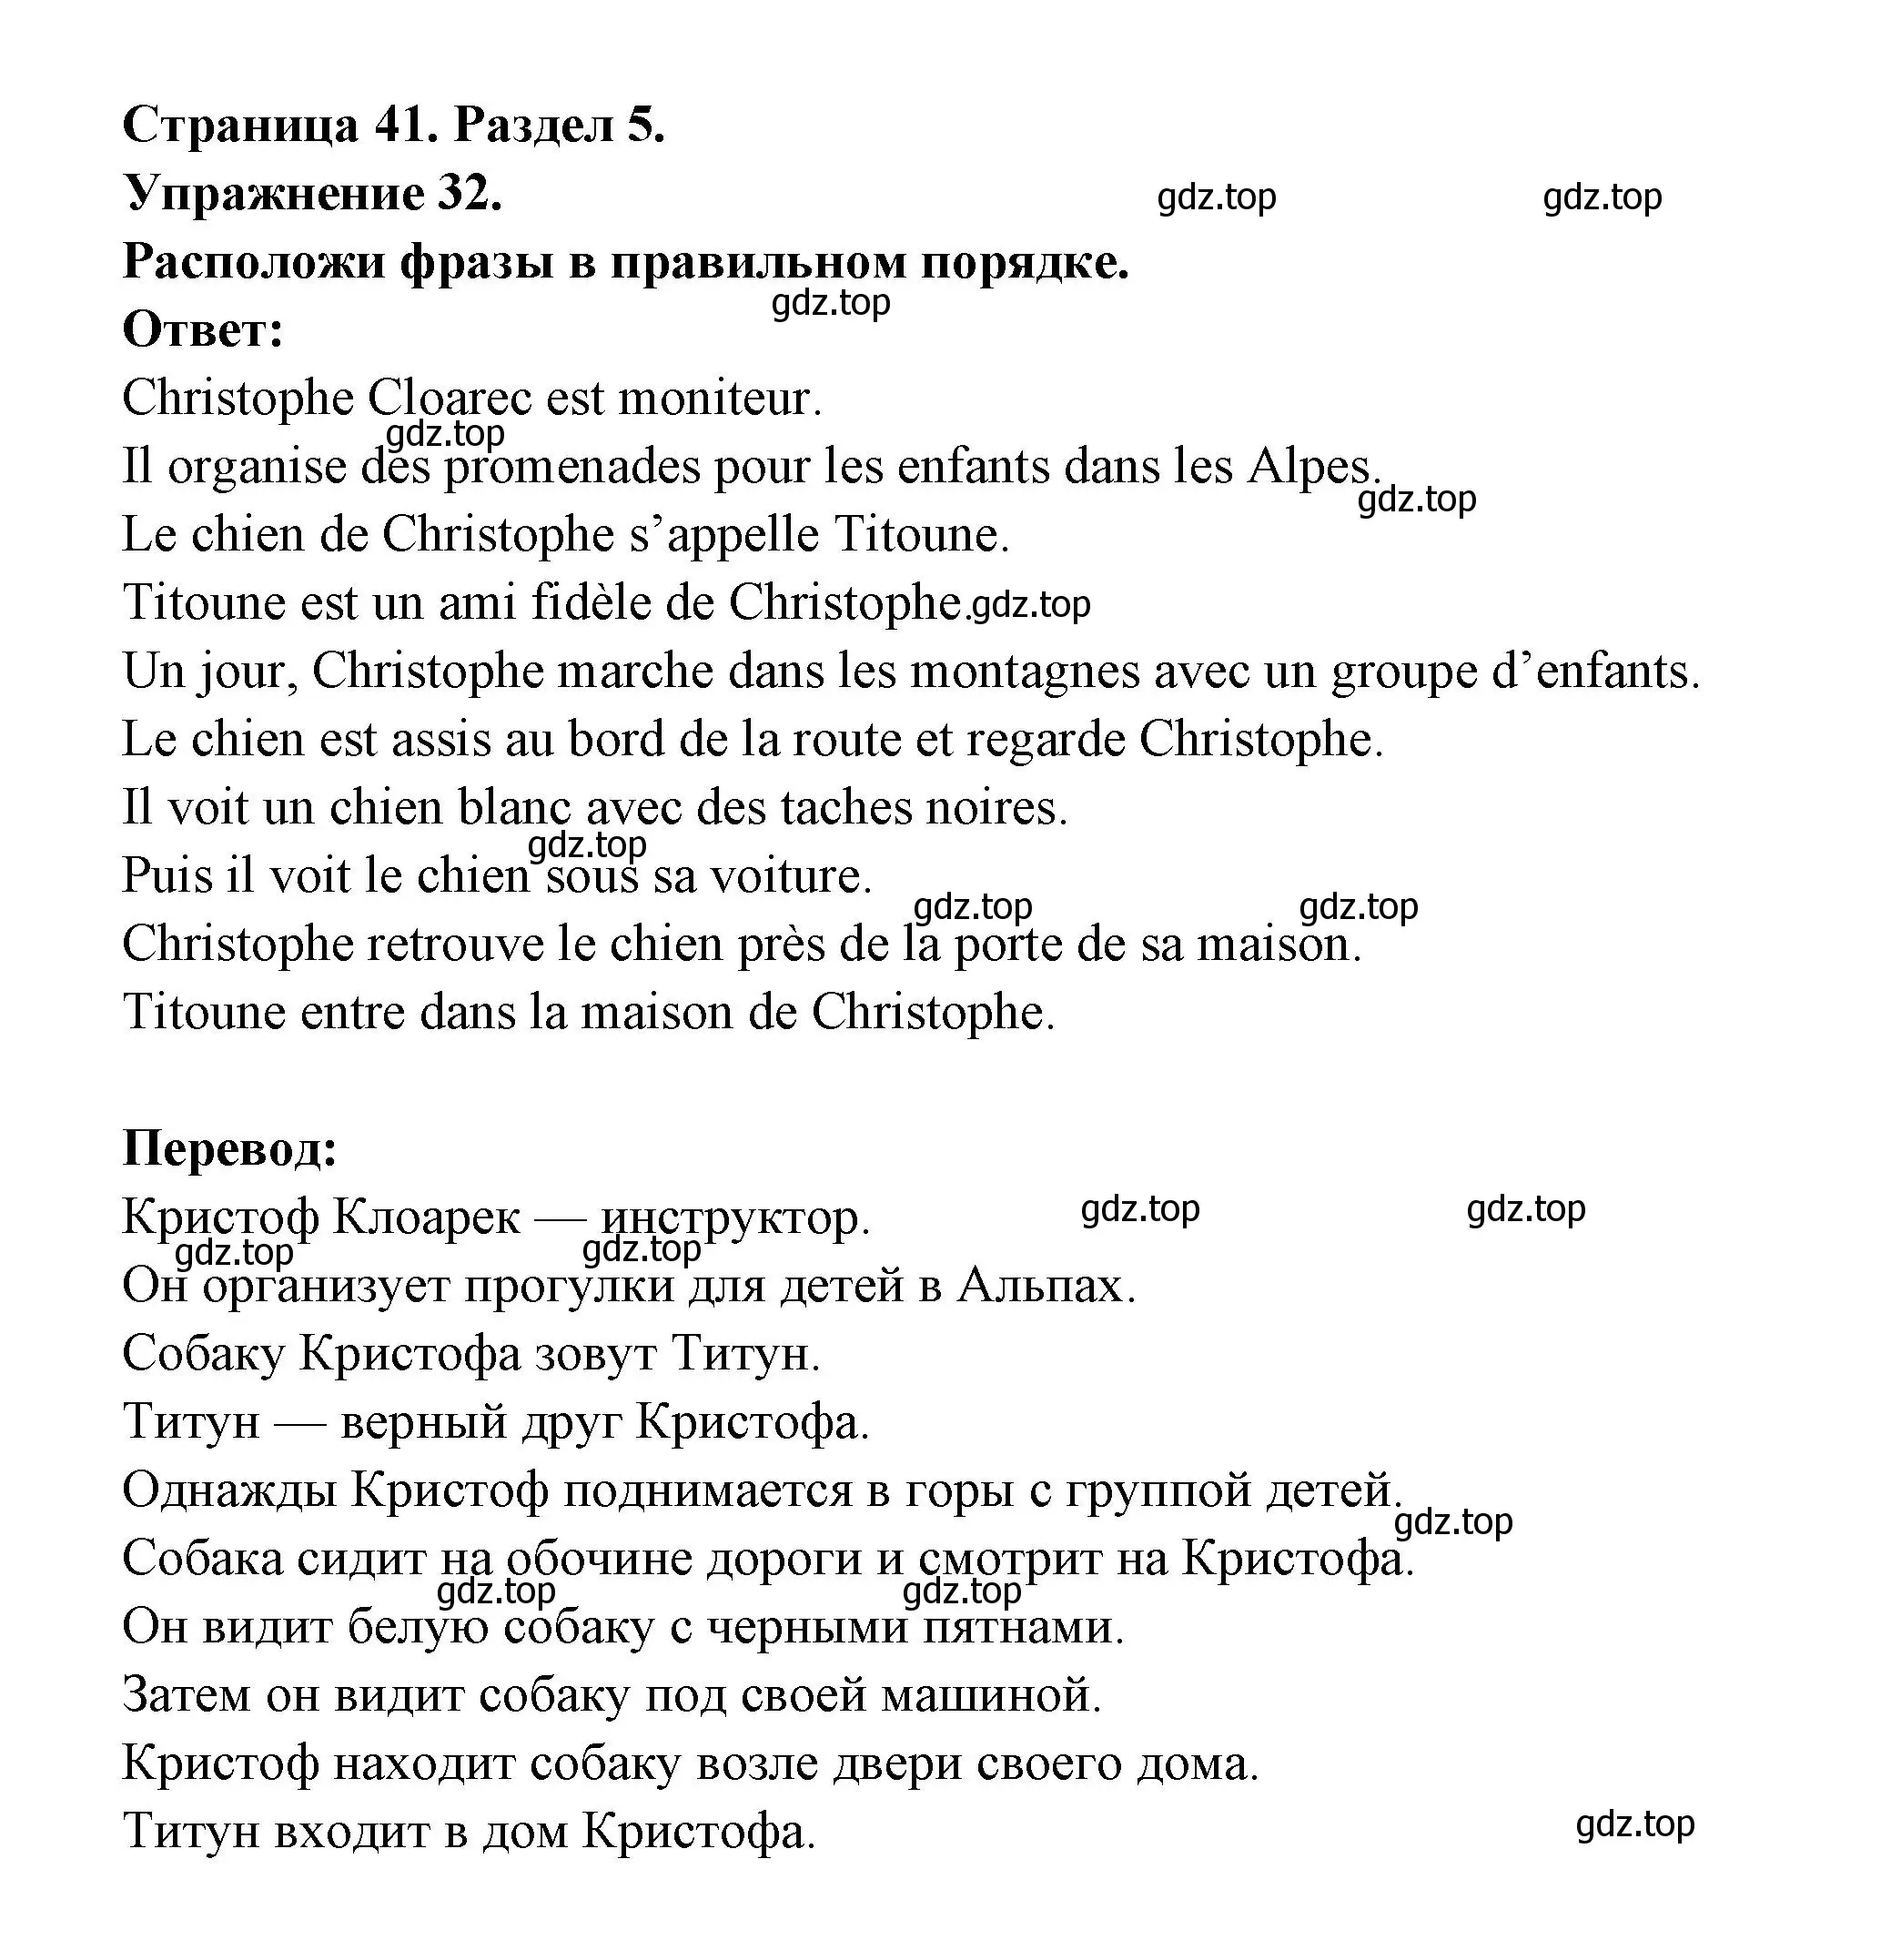 Решение номер 32 (страница 41) гдз по французскому языку 5 класс Береговская, Белосельская, учебник 2 часть